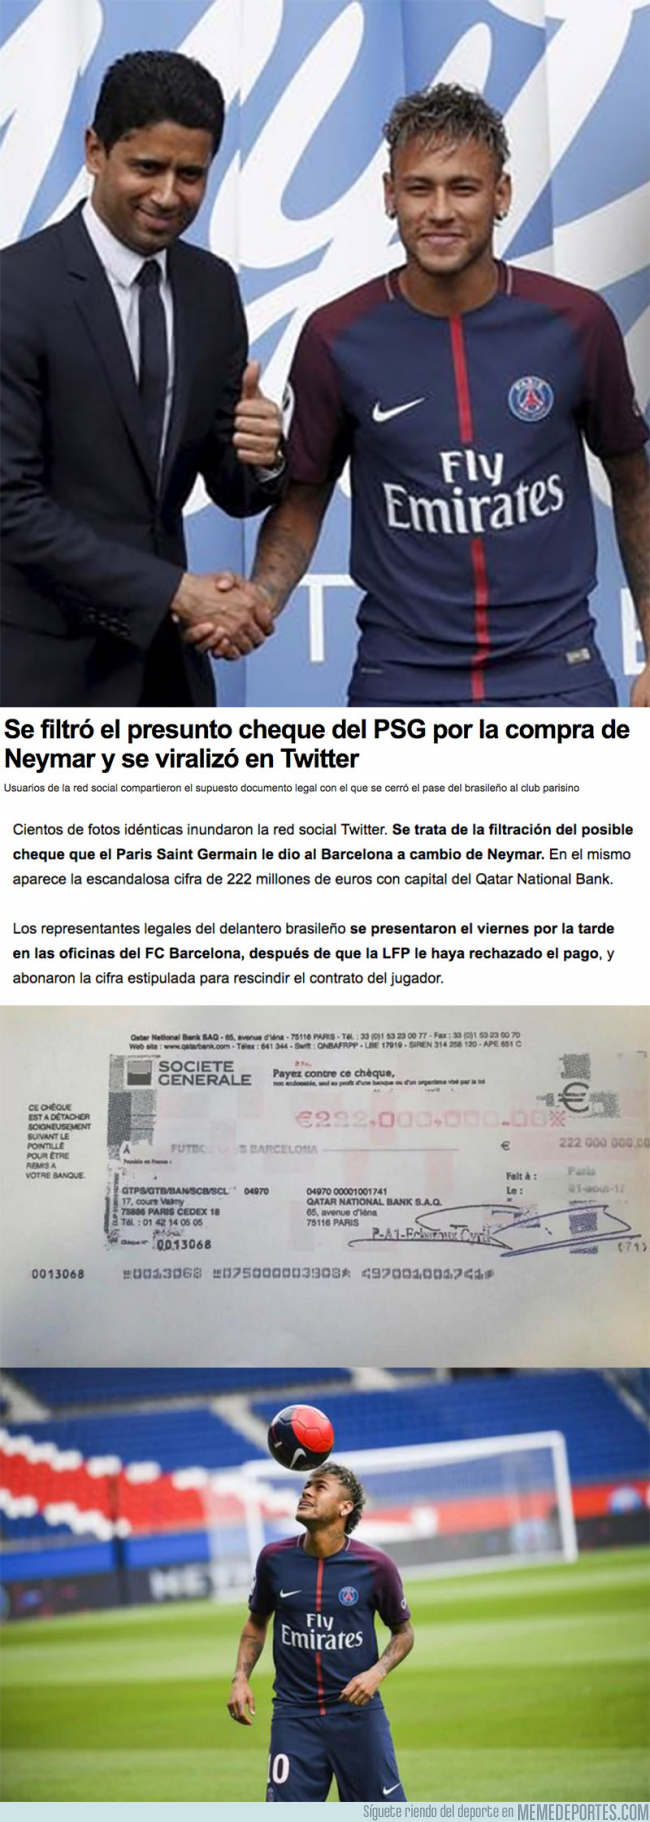 991500 - Se filtra el cheque con el que el PSG pagó 222 millones de € al Barça